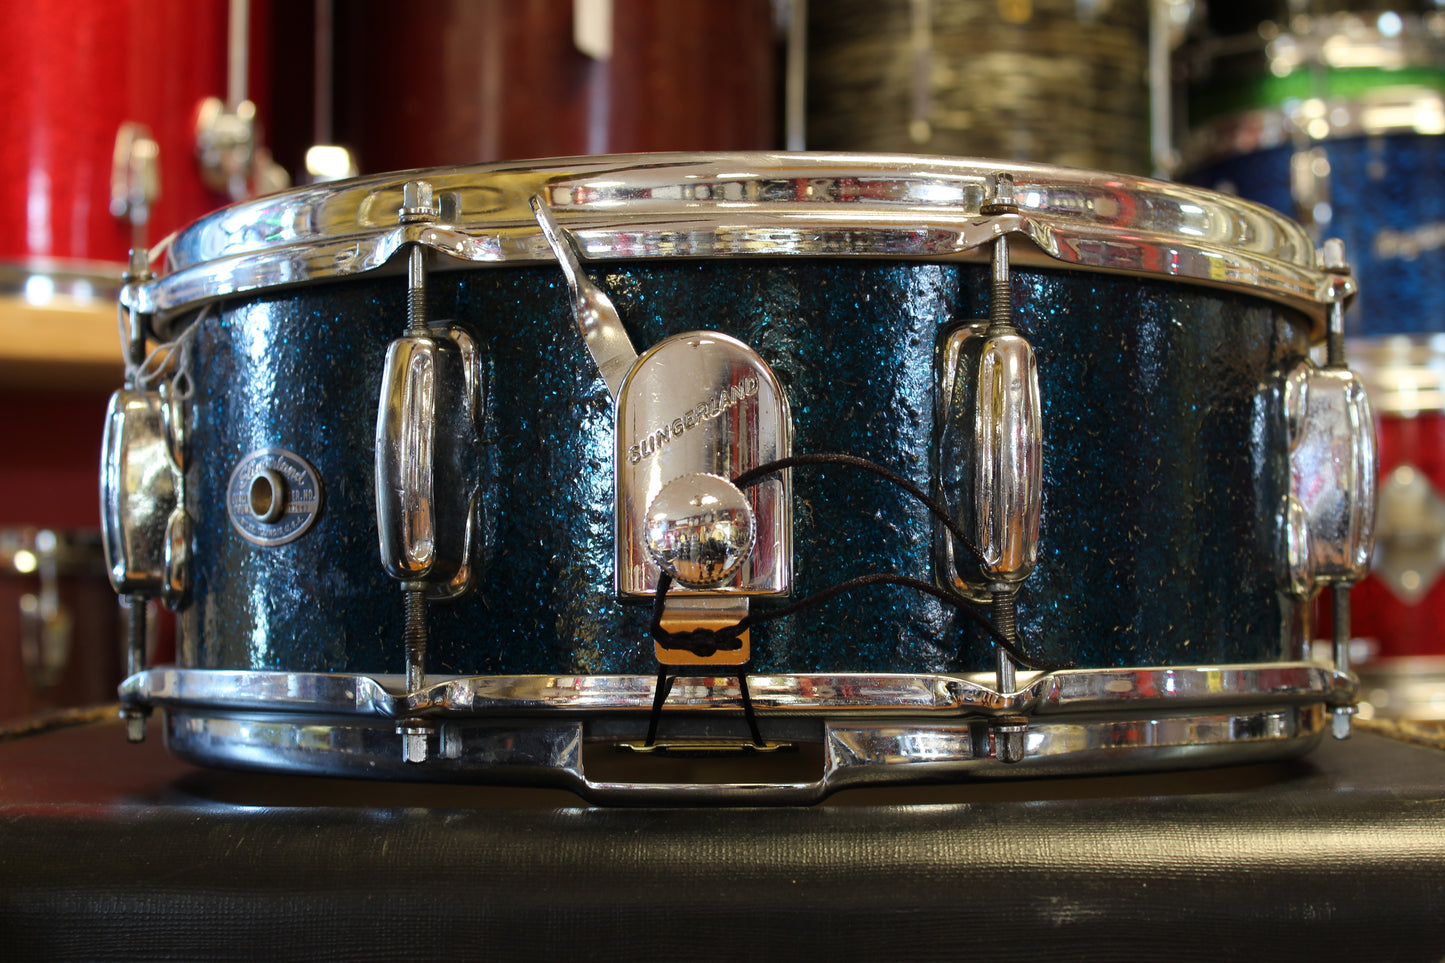 1965 Slingerland 5.5"x14" Artist model Snare Drum in Sparkling Blue Pearl